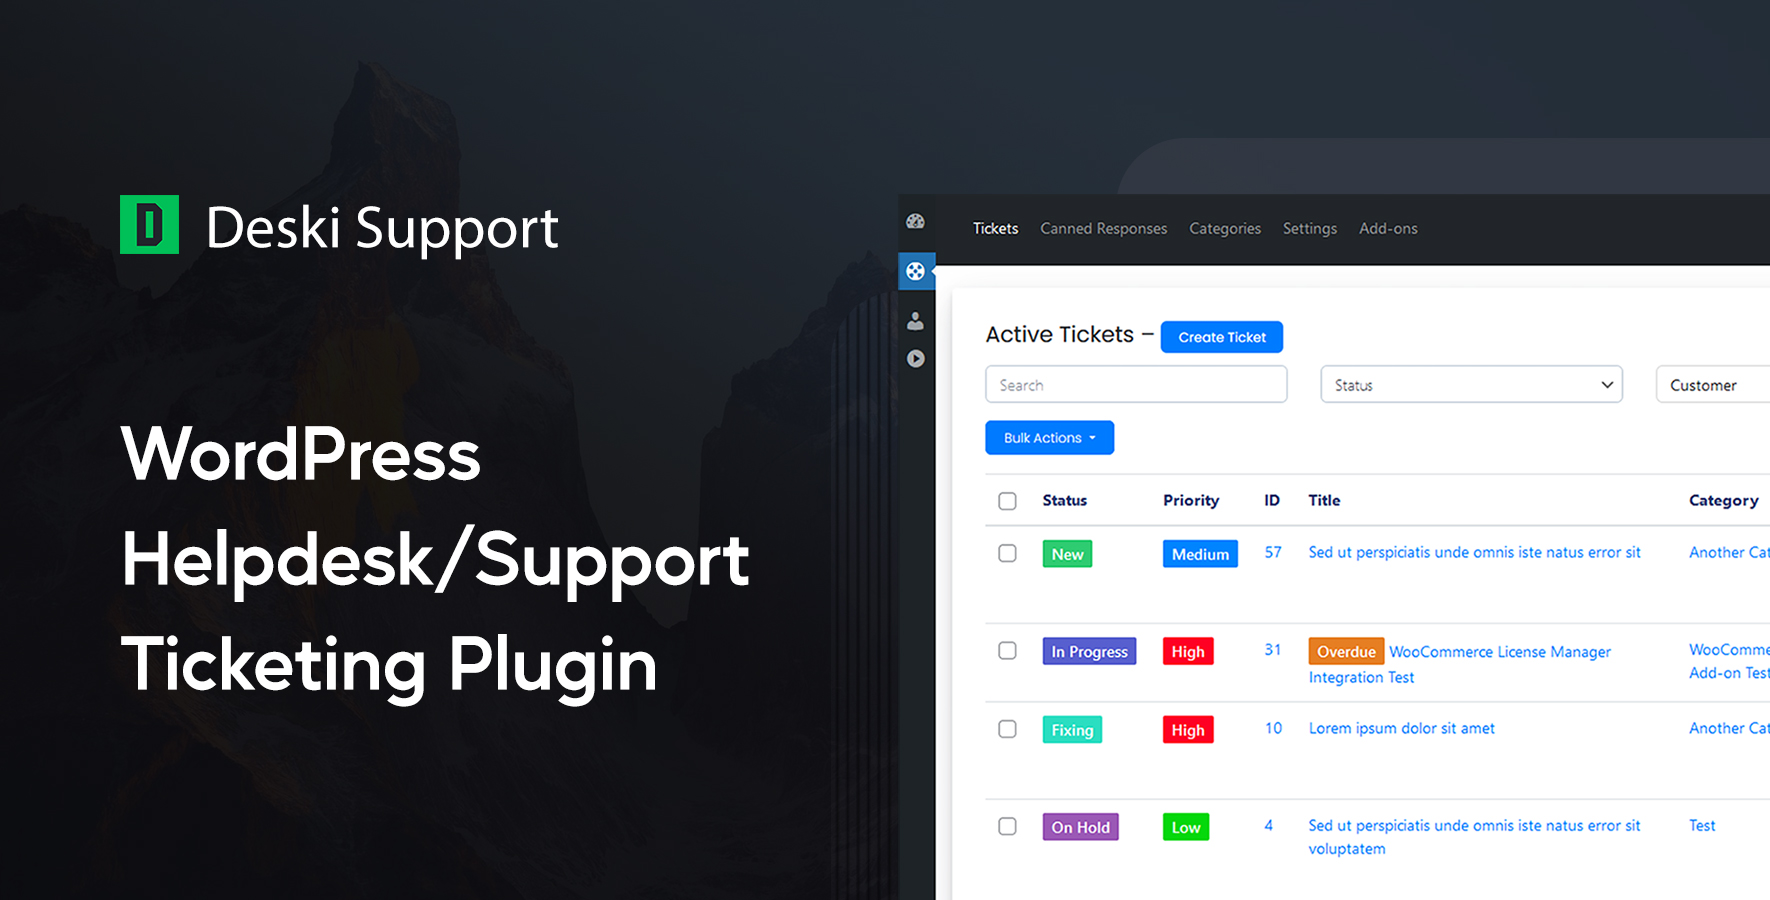 Deski Support – WordPress HelpDesk & Support Ticketing Plugin